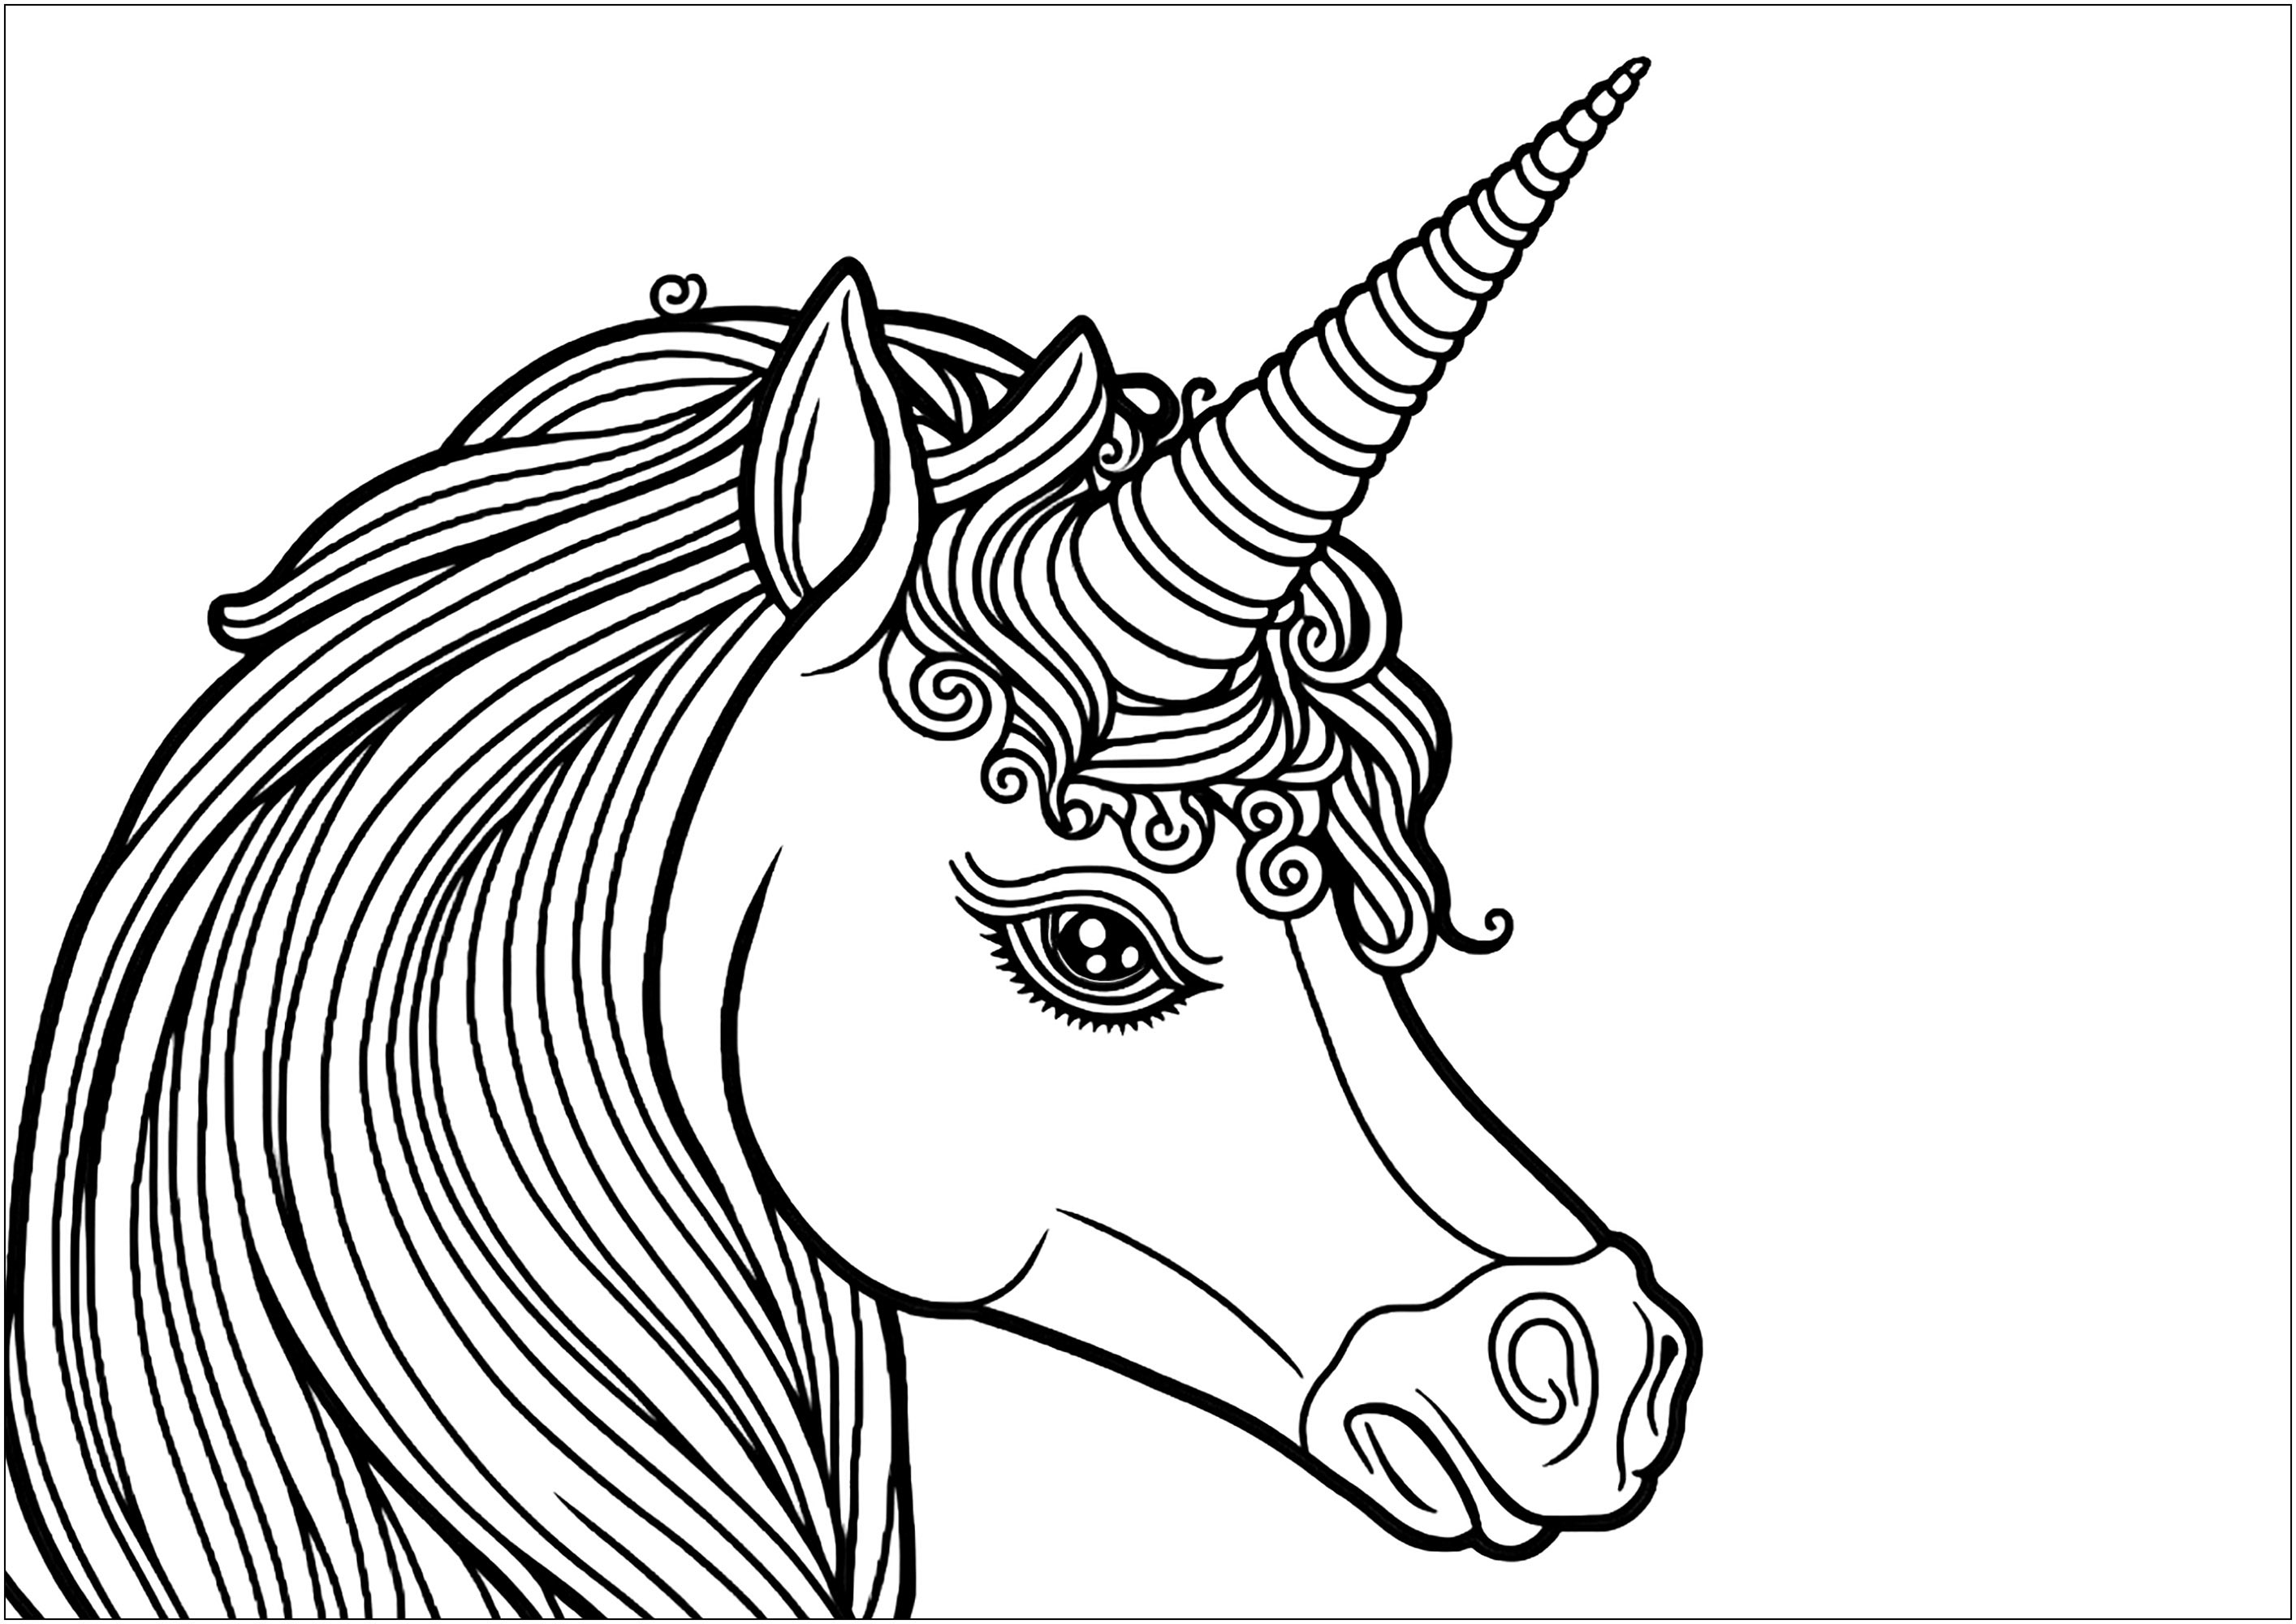 Un bonito unicornio visto de perfil, sobre fondo blanco